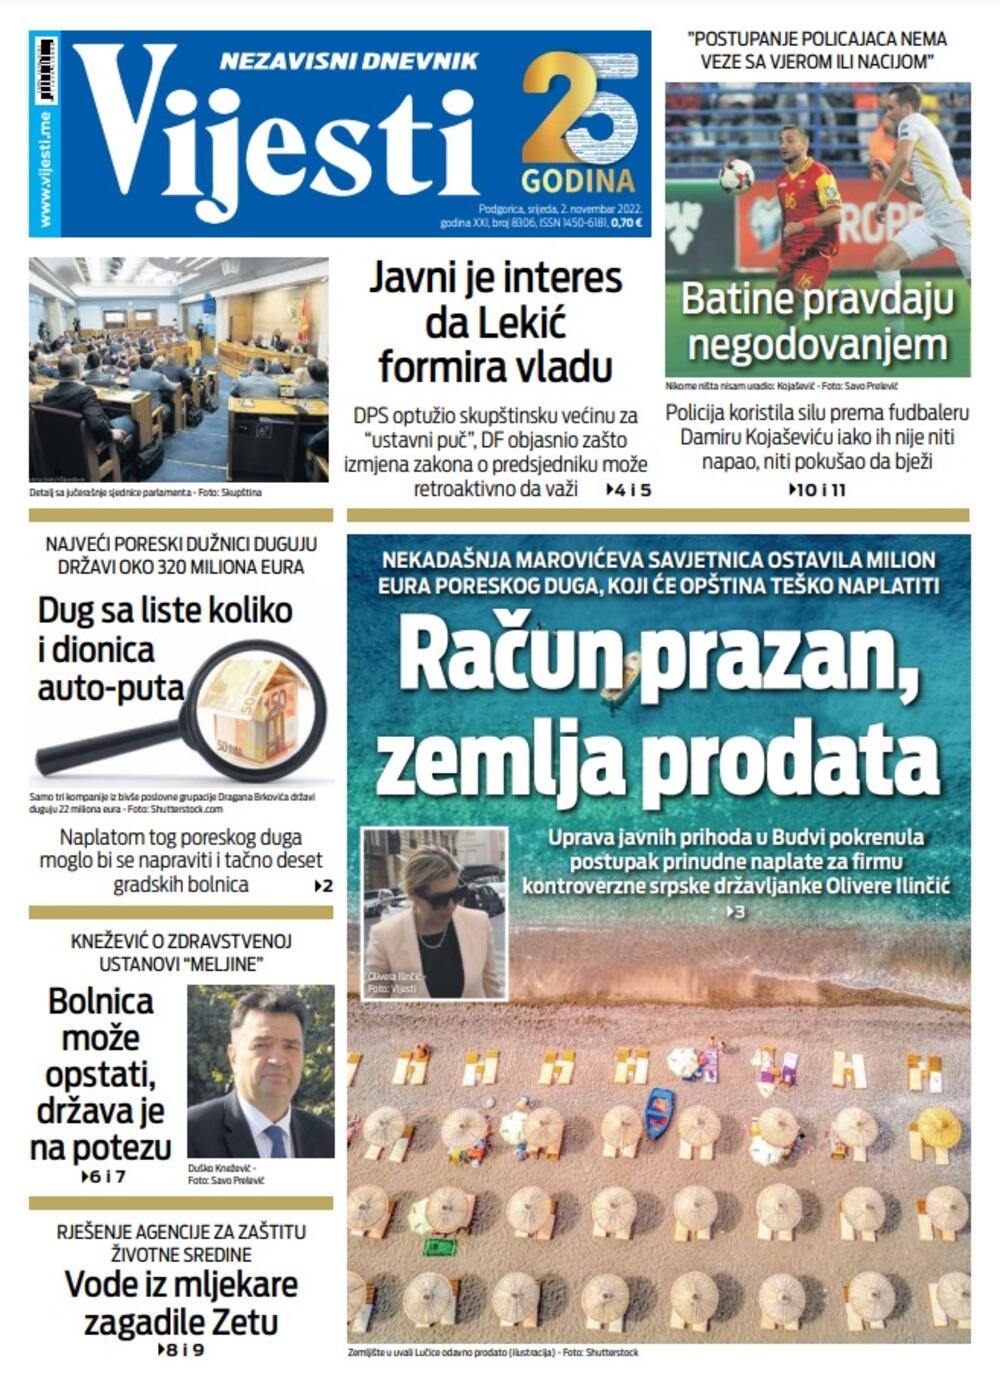 Naslovna strana "Vijesti" za 2. novembar 2022., Foto: Vijesti